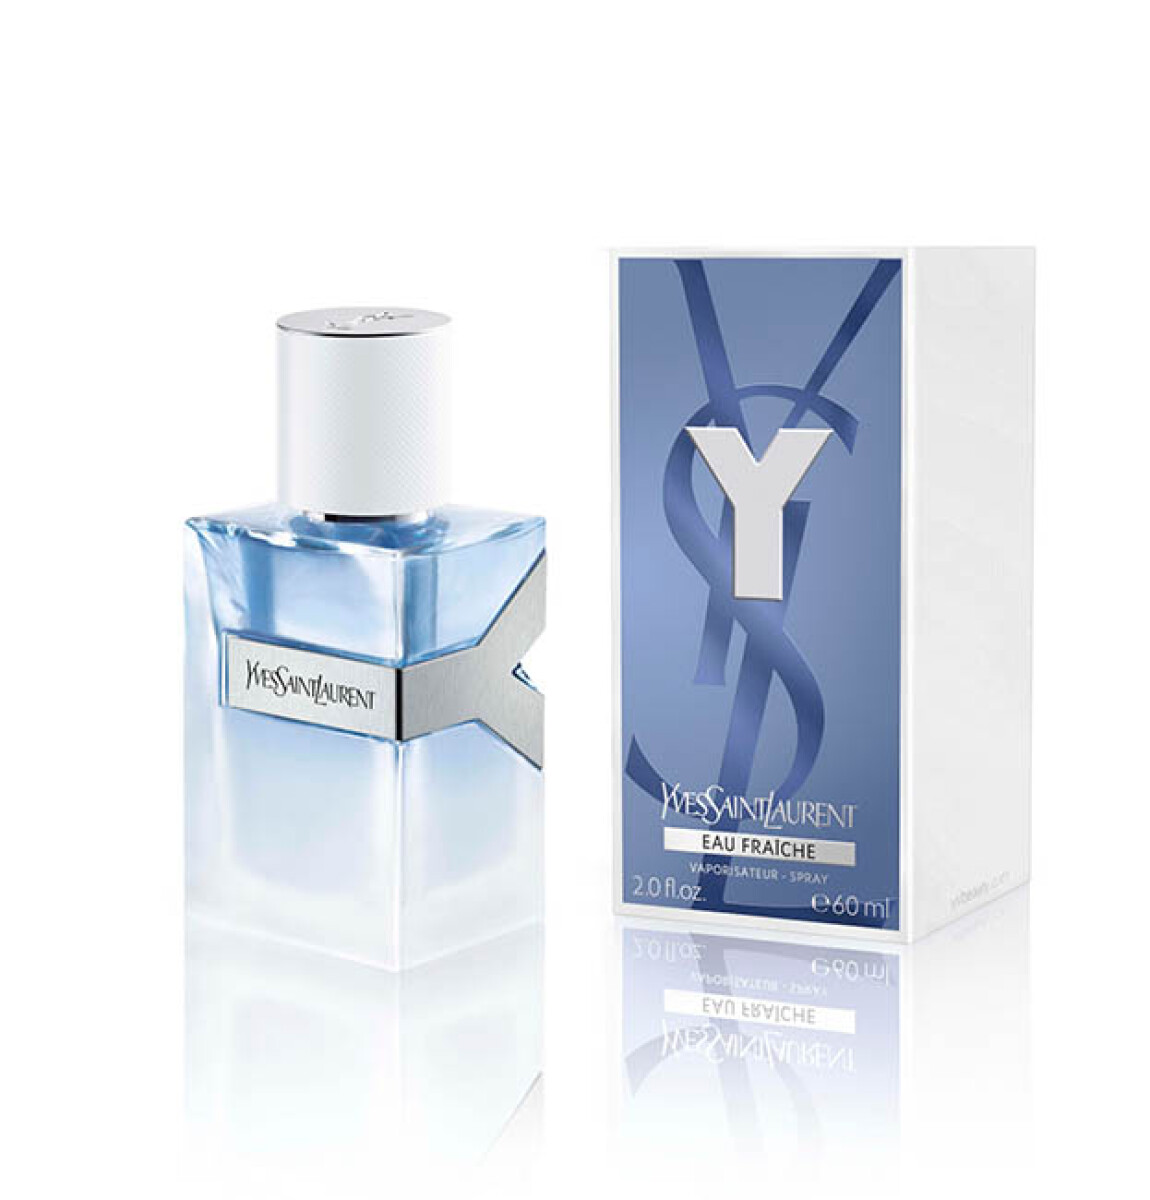 Y eau de fraiche Yves Saint Laurent - 60 ml 